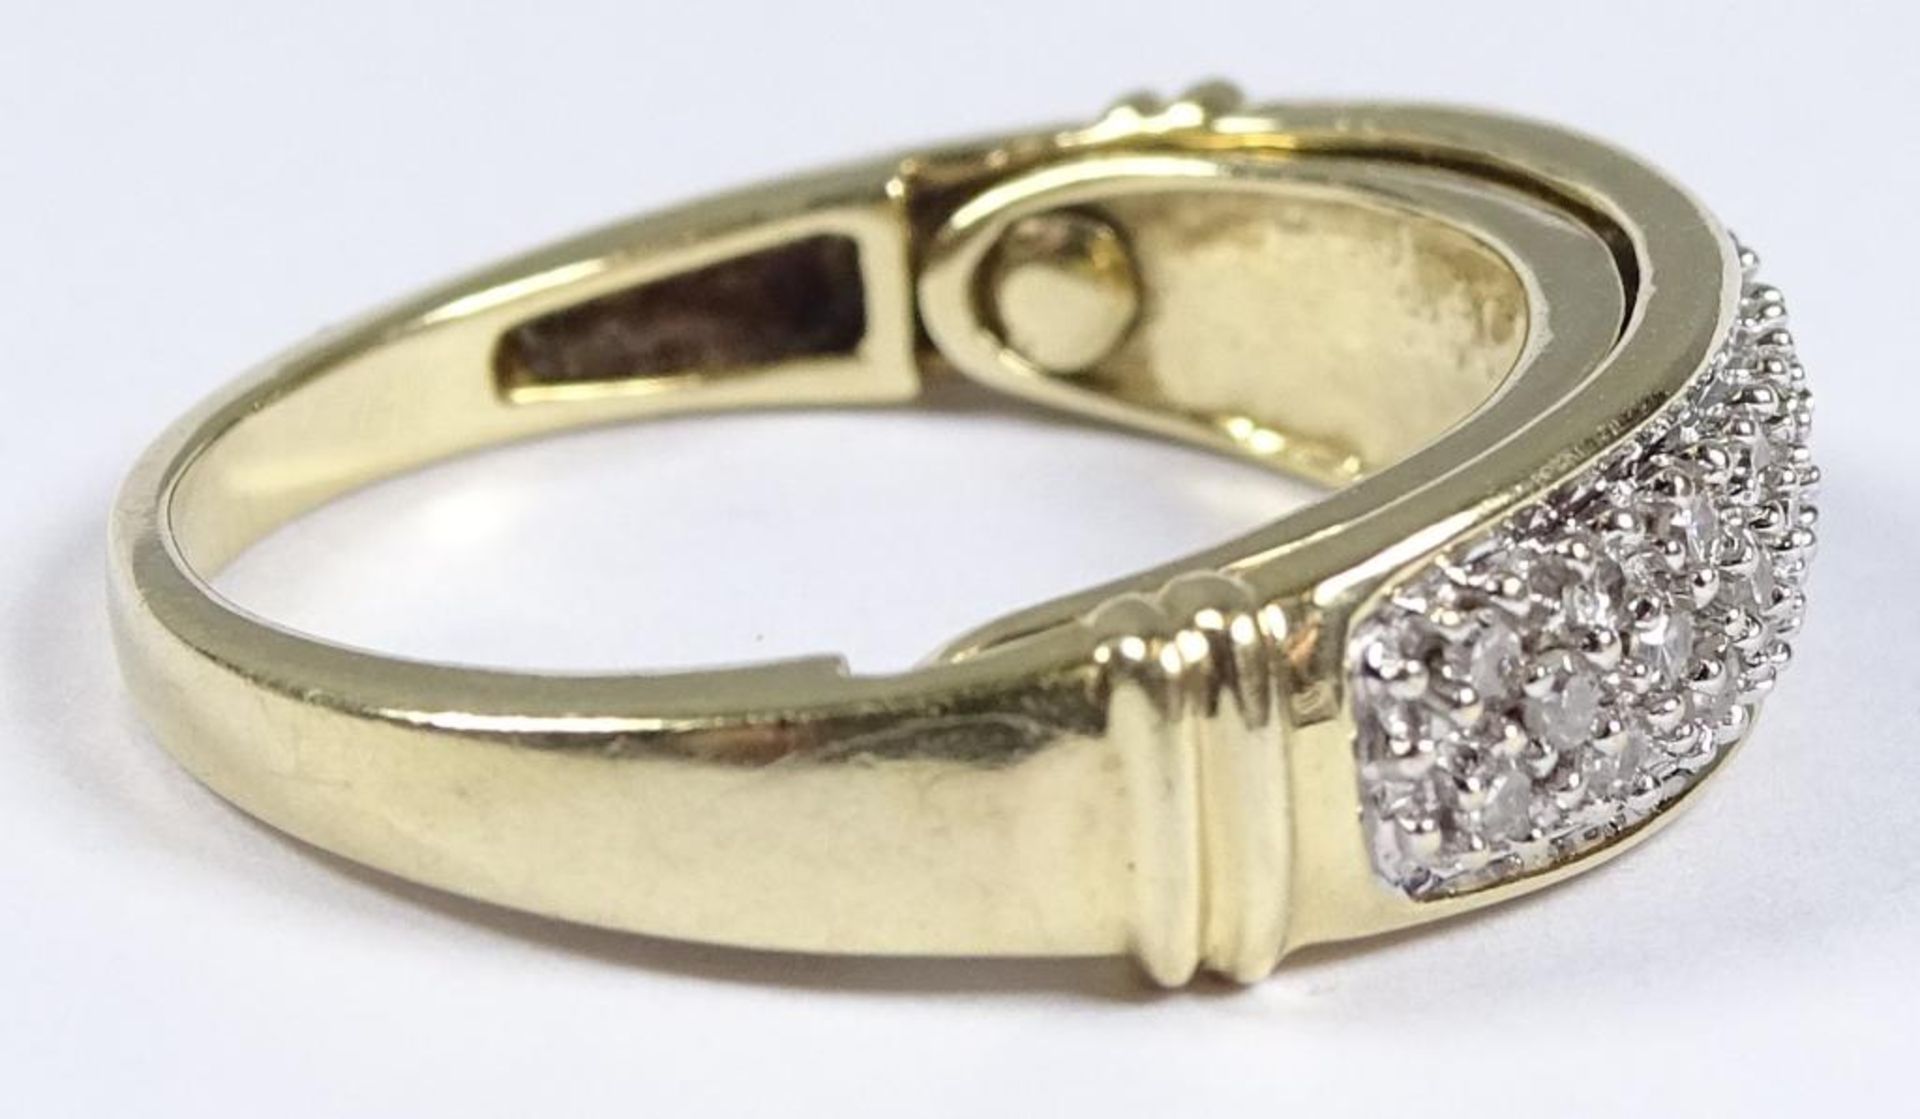 Goldring 585/000, Diamanten, innere Schiene beweglich "I Love you",4,5gr., RG 56 - Bild 4 aus 7